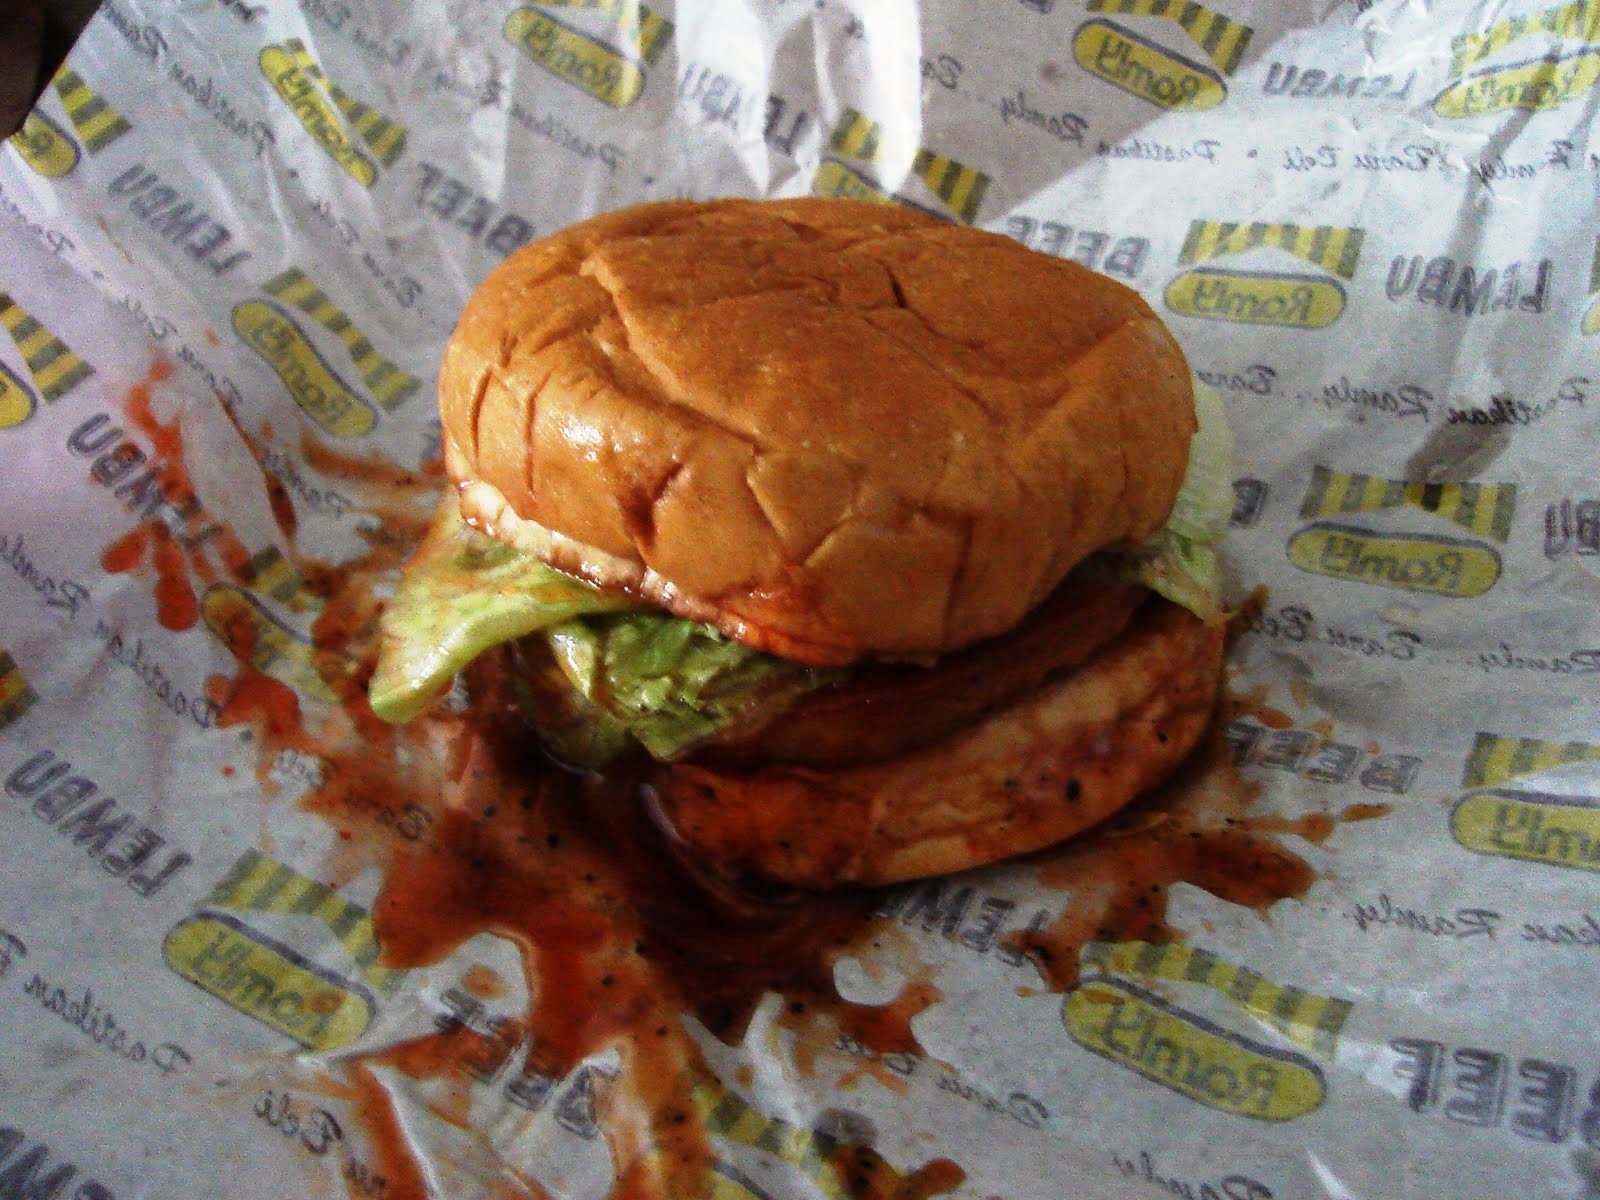 UTOPIA: I 'heart' Ramly Burger